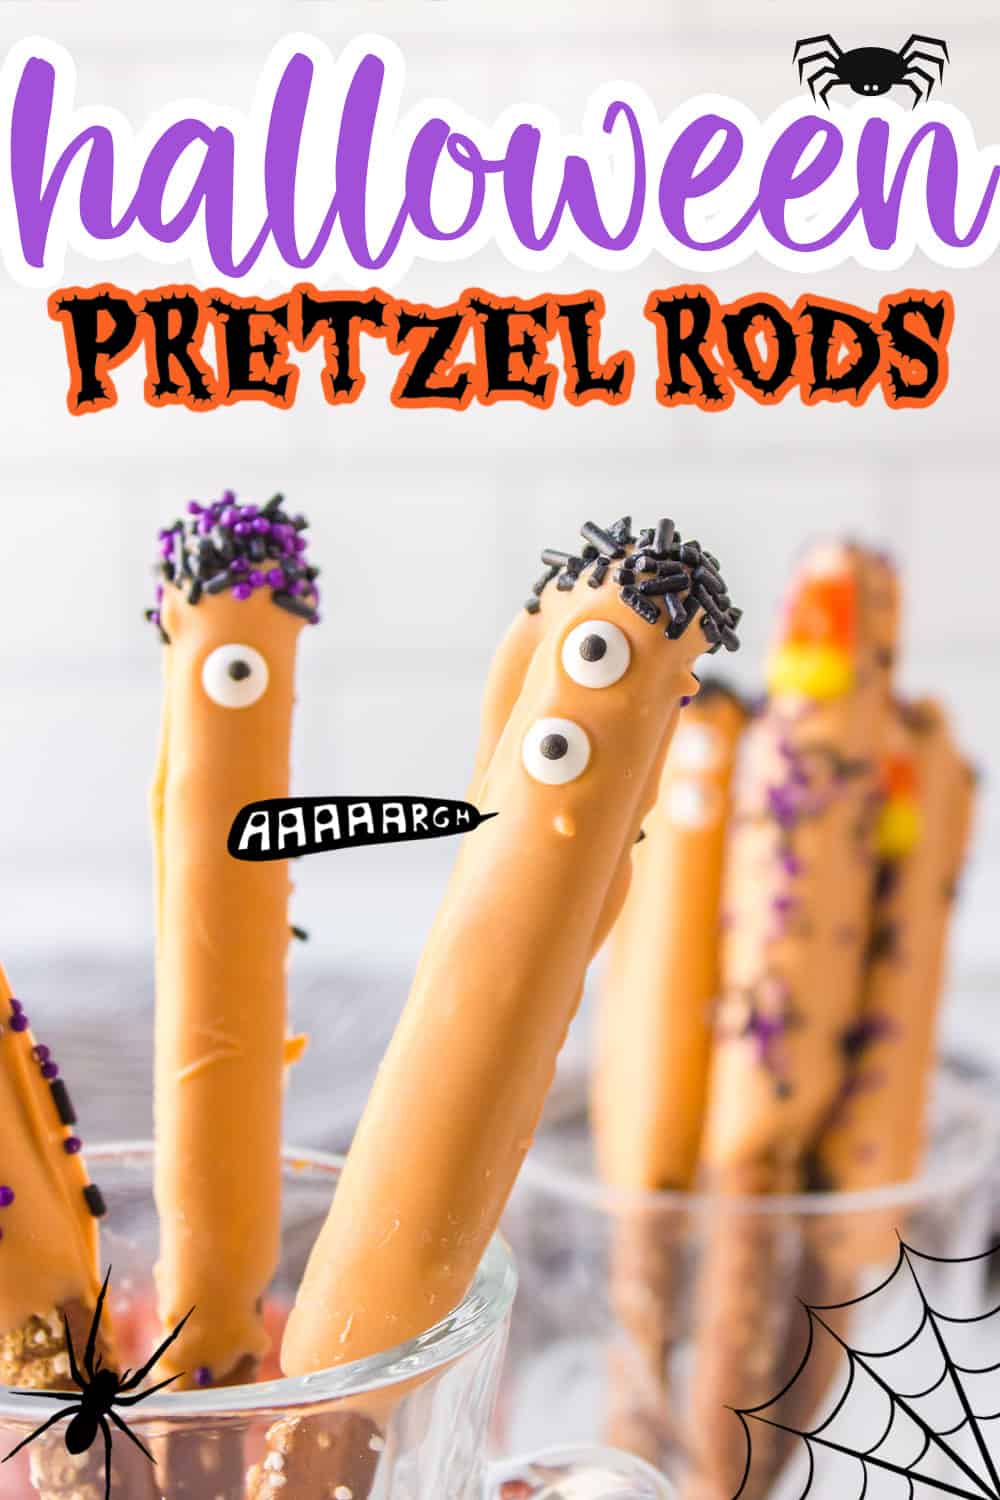 Halloween pretzel rods in glass.